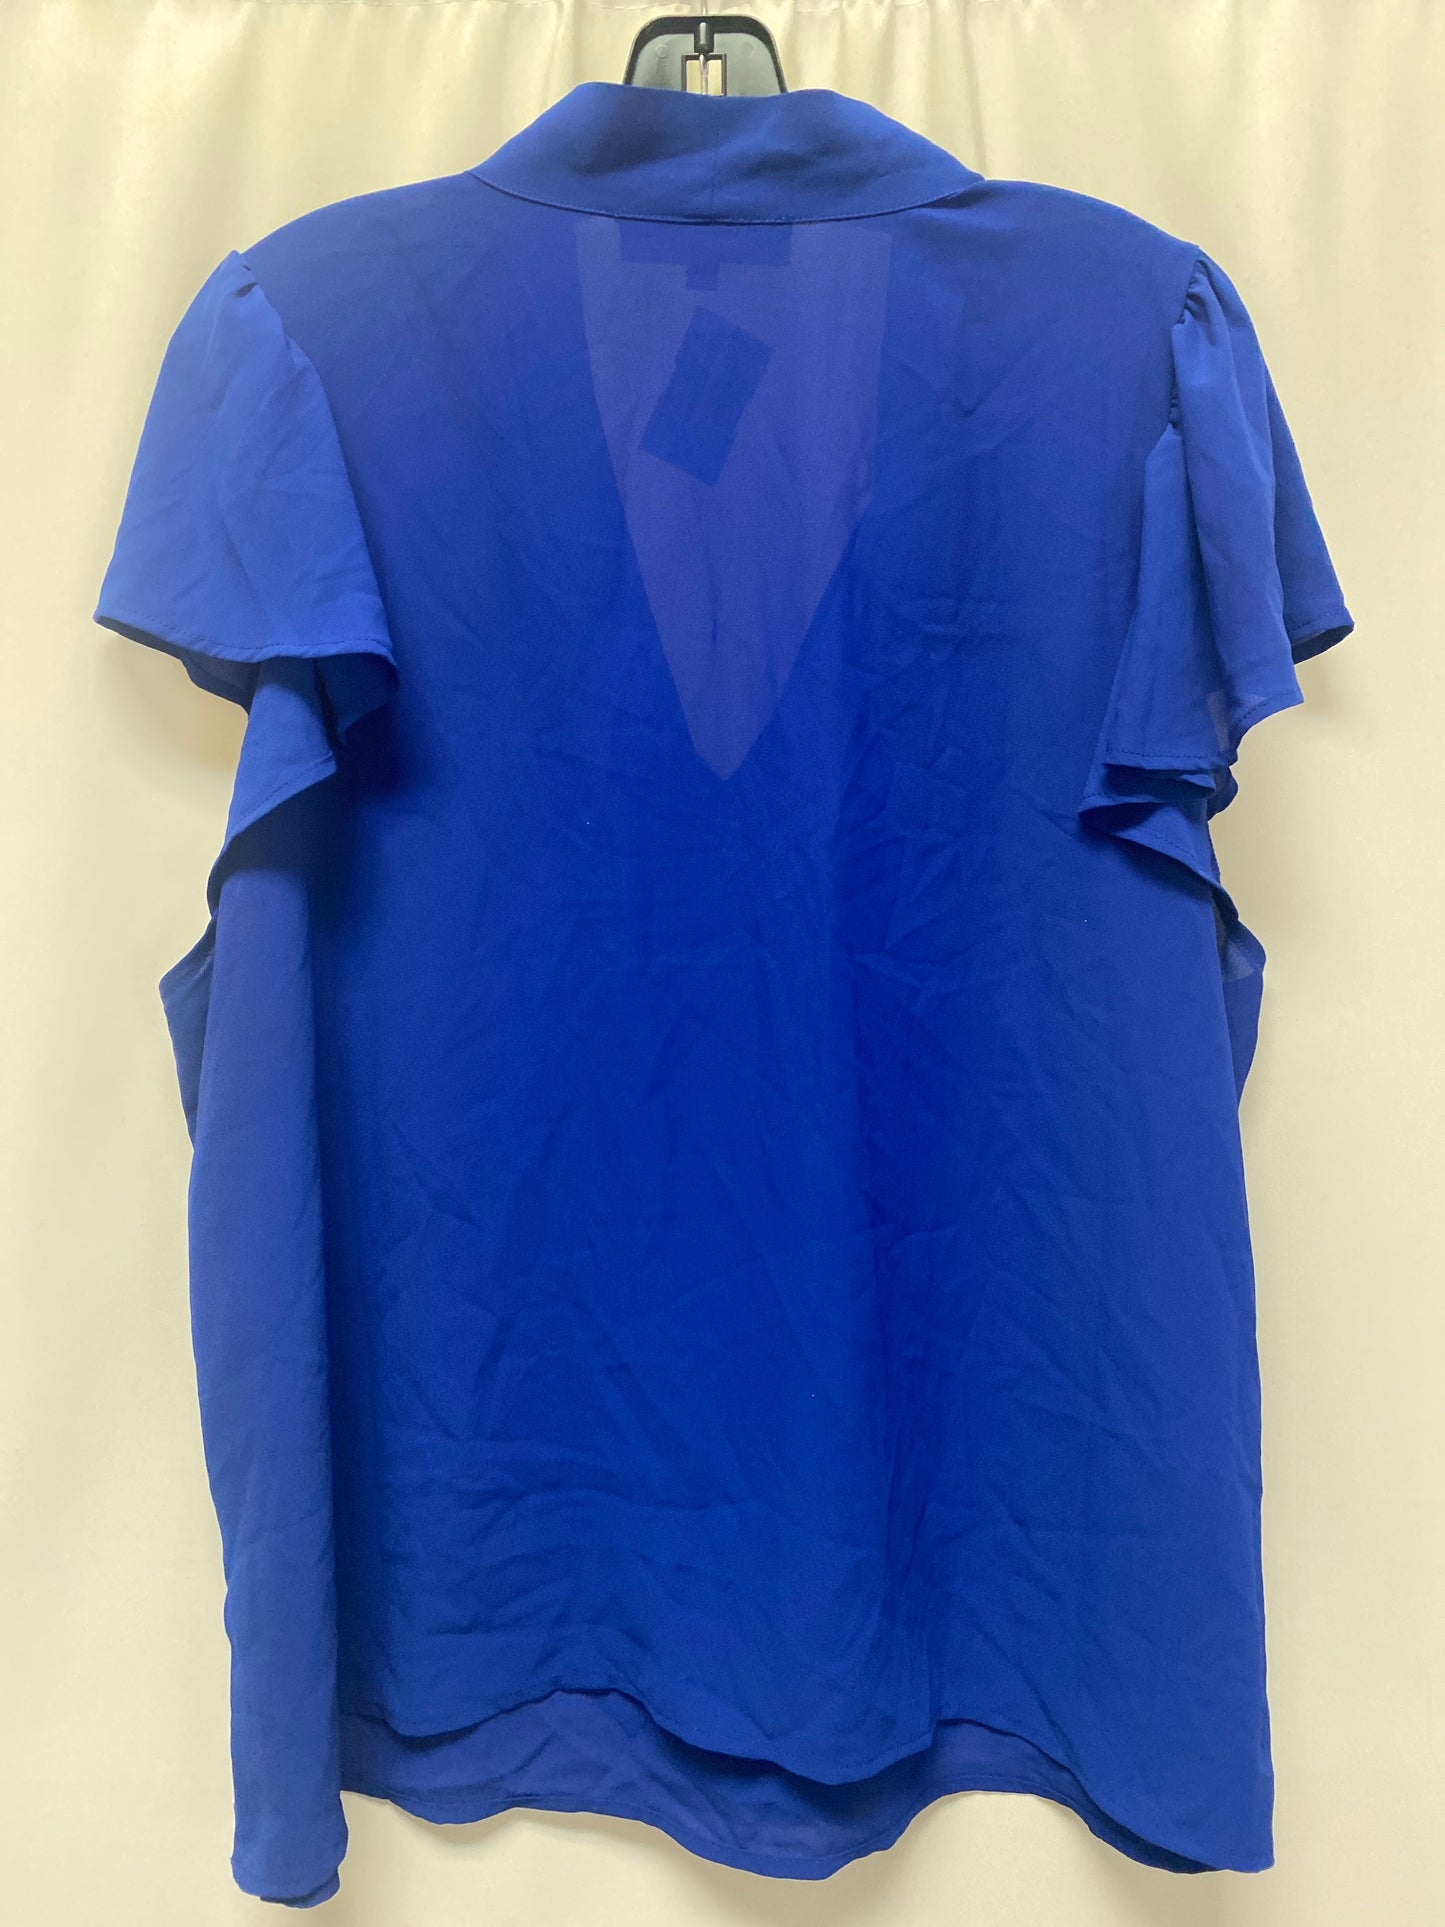 Blue Top Short Sleeve Eloquii, Size 2x